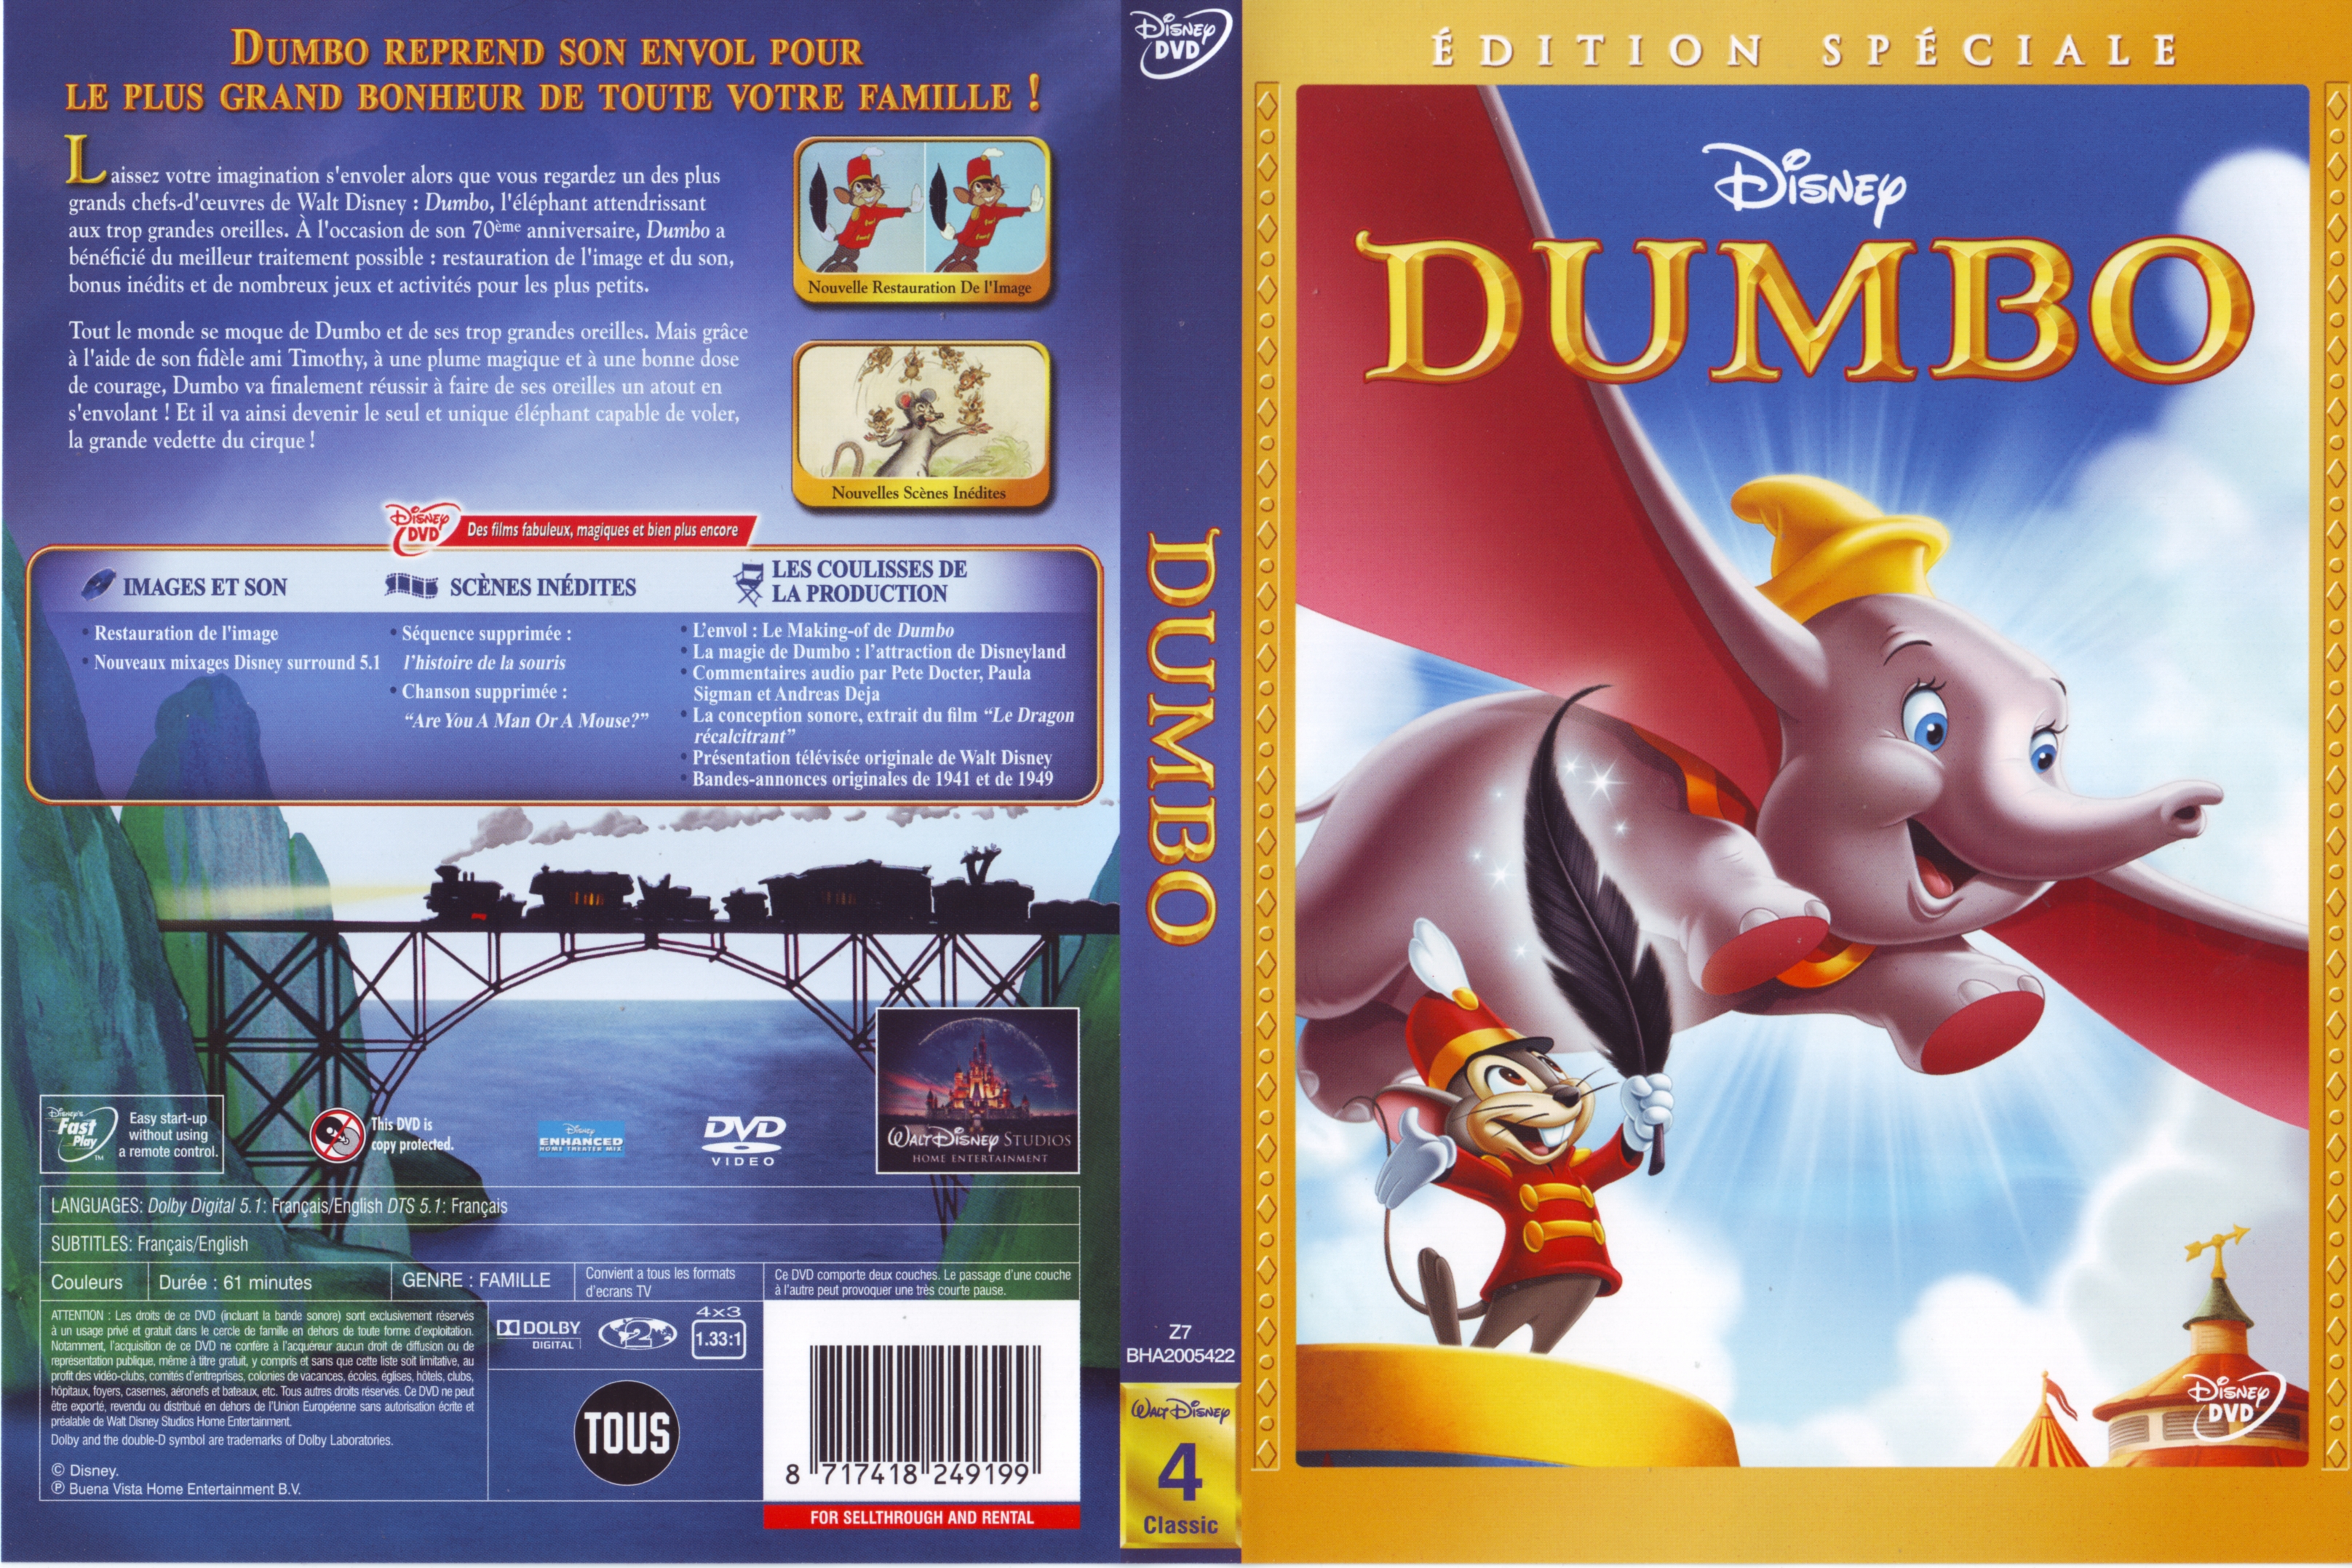 Jaquette DVD Dumbo v3